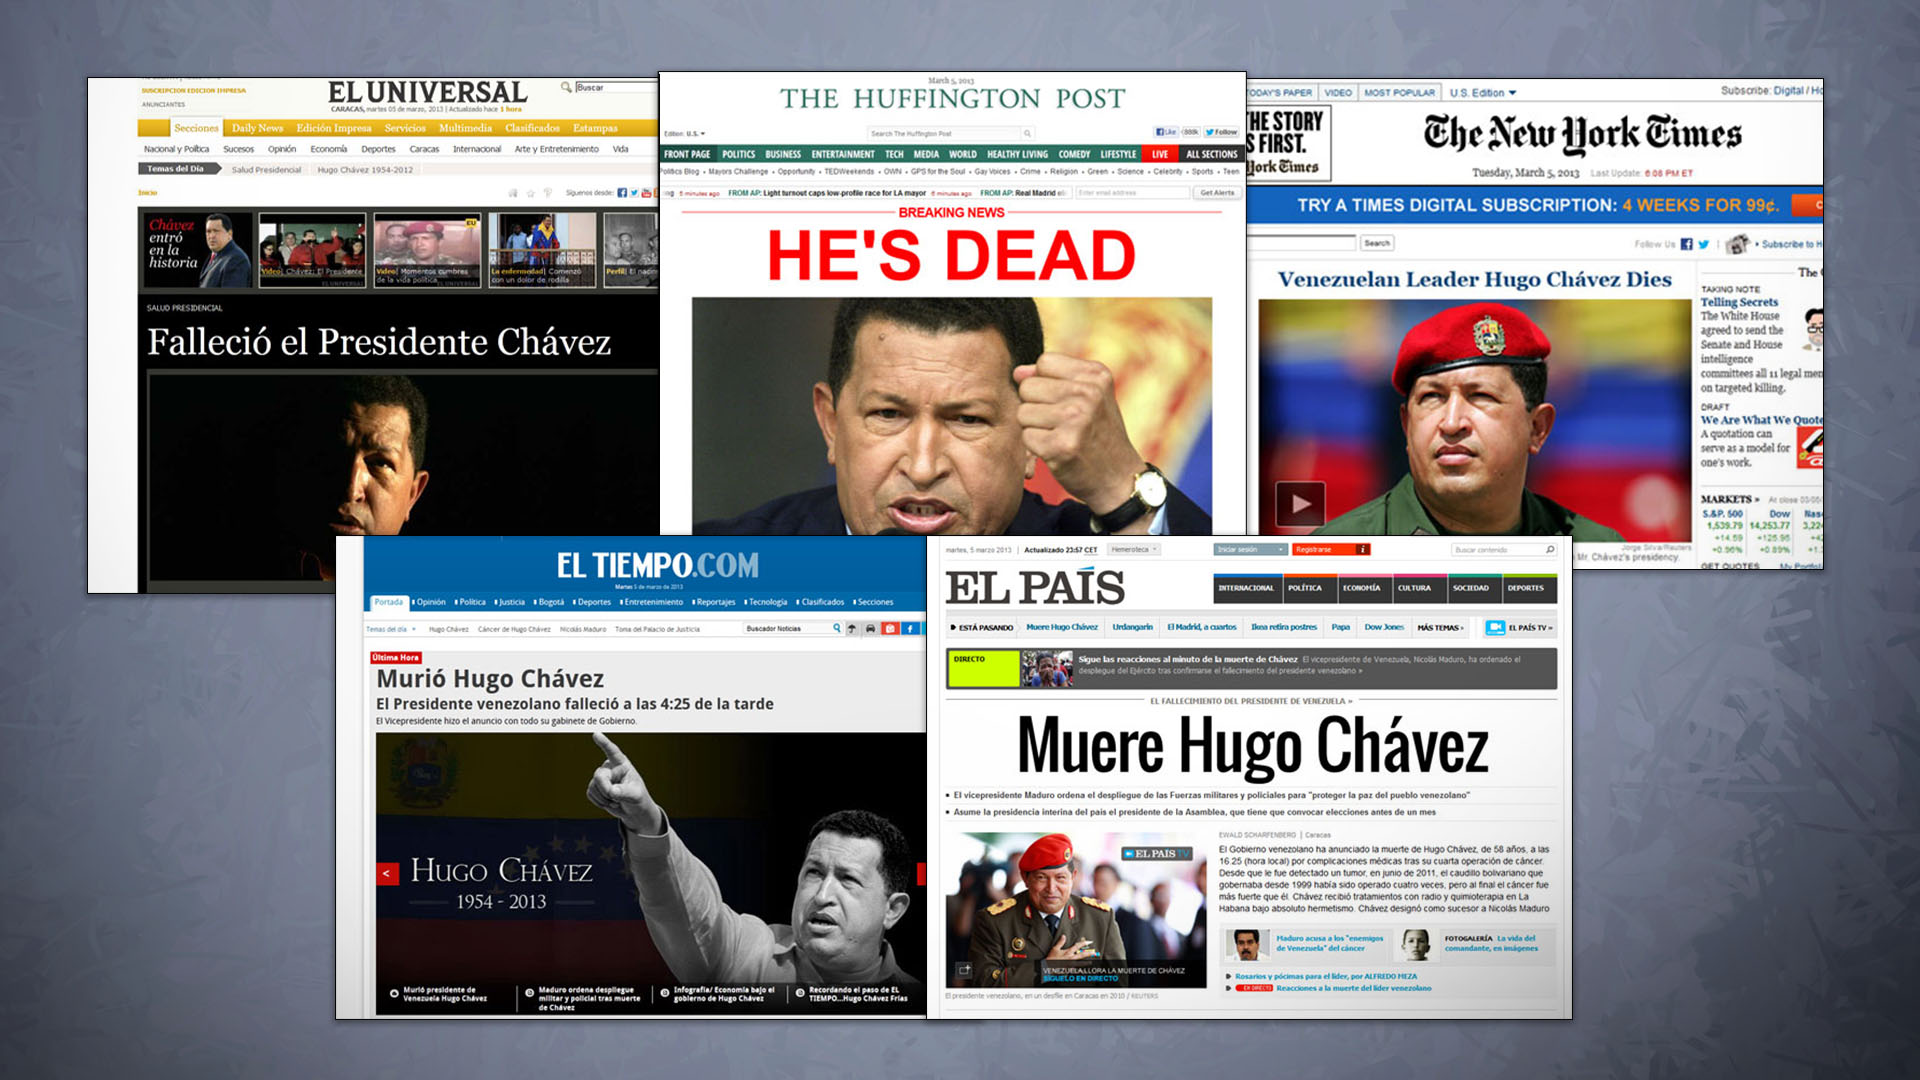 El régimen anunció la muerte de Hugo Chávez el 05 de marzo cerca de las 5:00 p.m.